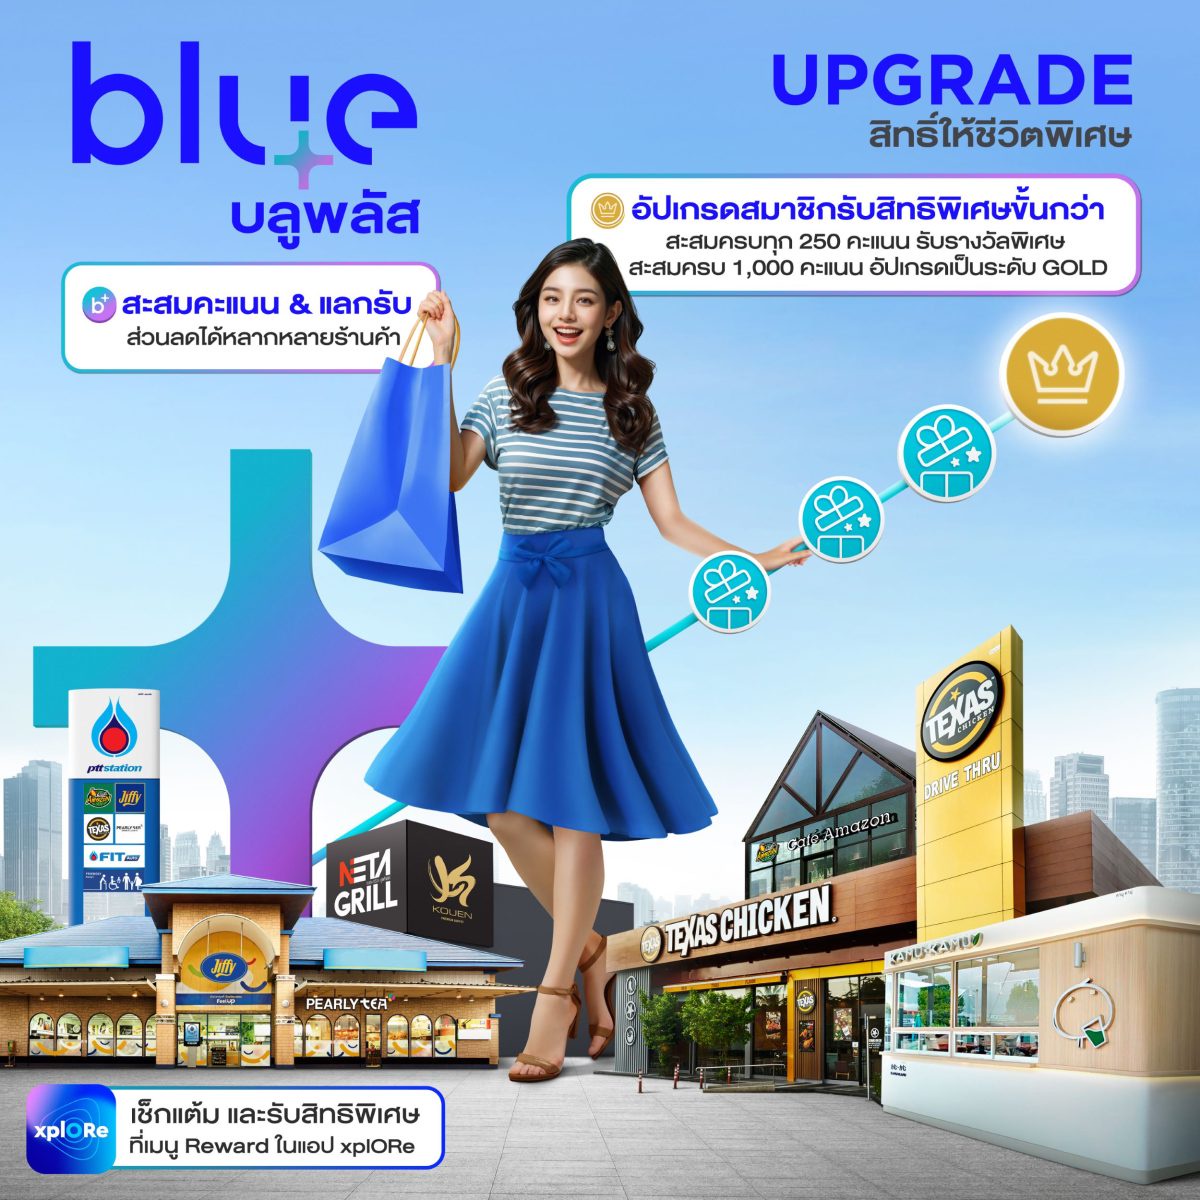 blueplus ส่งแคมเปญโฆษณาชุด blueplus #PlusTogether ชวนผู้คนพลัสความสุขให้มากกว่าเดิม โอกาสดี ๆ ที่พลาดไม่ได้